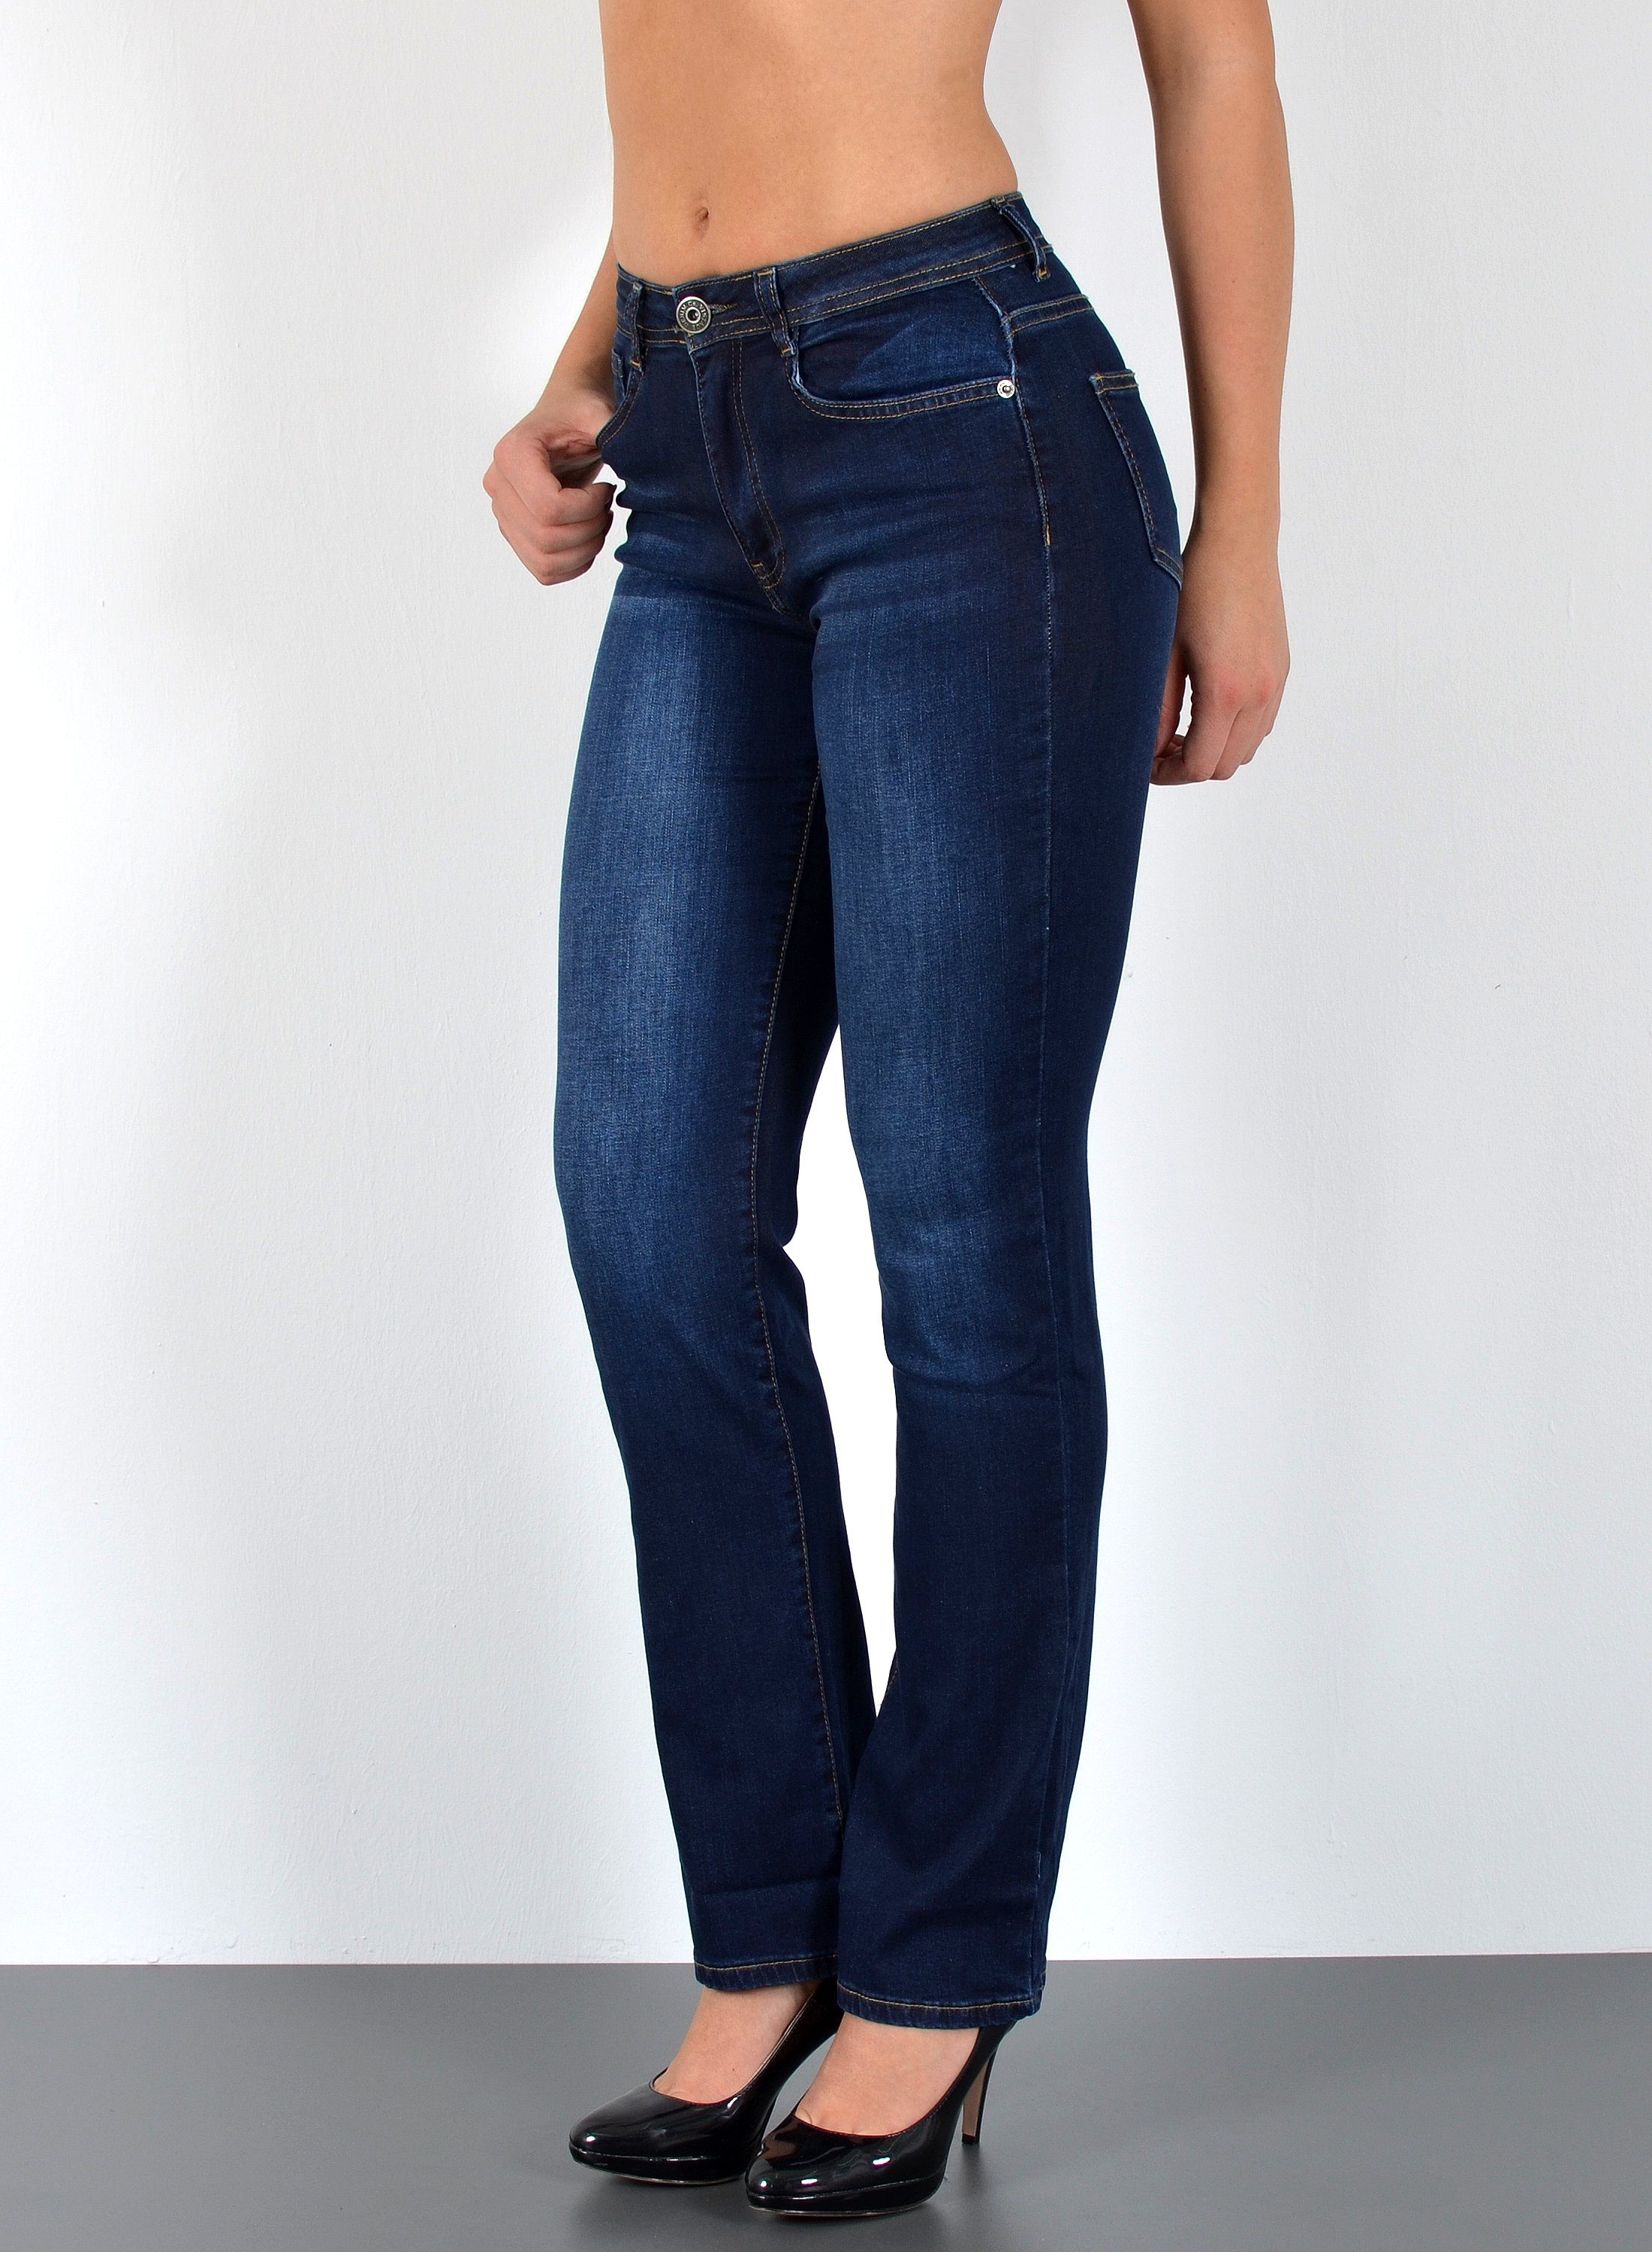 Jeans in großen Größen » Jeans für Mollige kaufen | OTTO